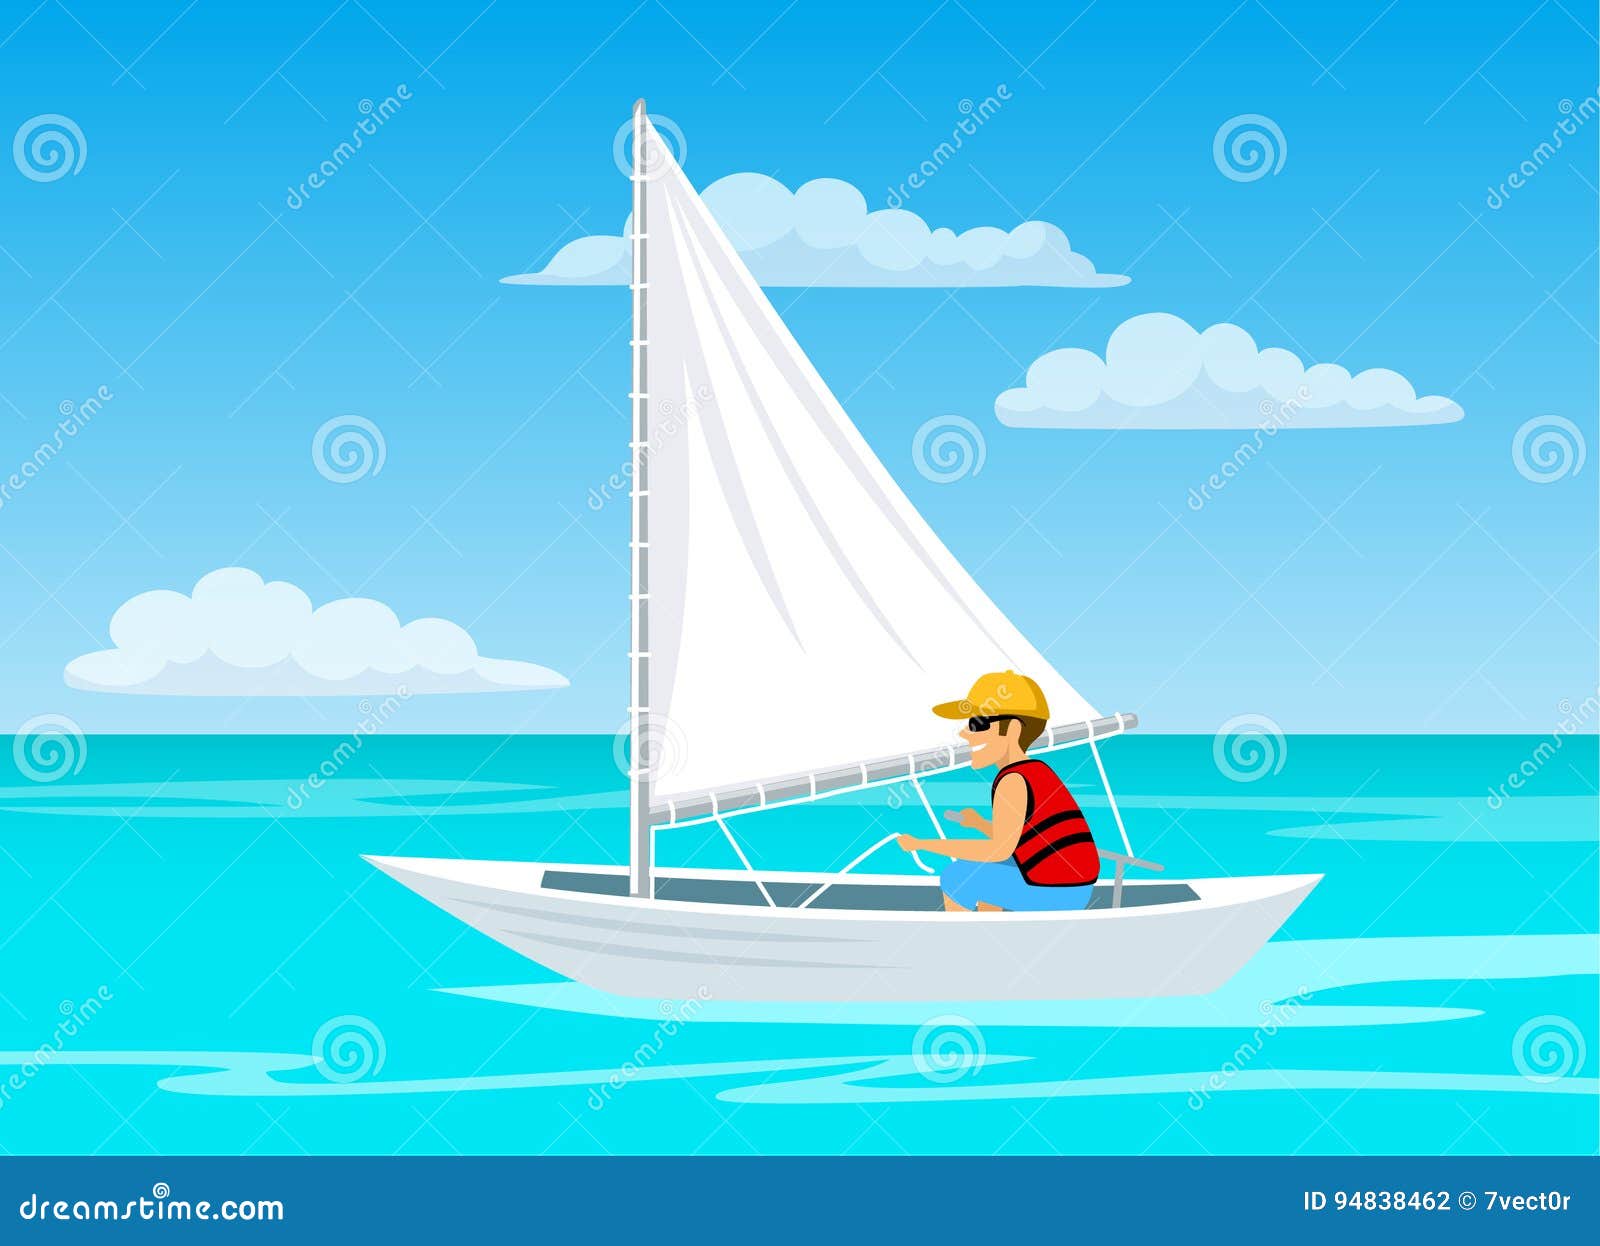 Путешественник переплыл спокойное озеро на яхте. Поплавать на паруснике. Яхта с парусами из мультфильма. Море Парус вектор. Картинка человек на плывущего парусника.